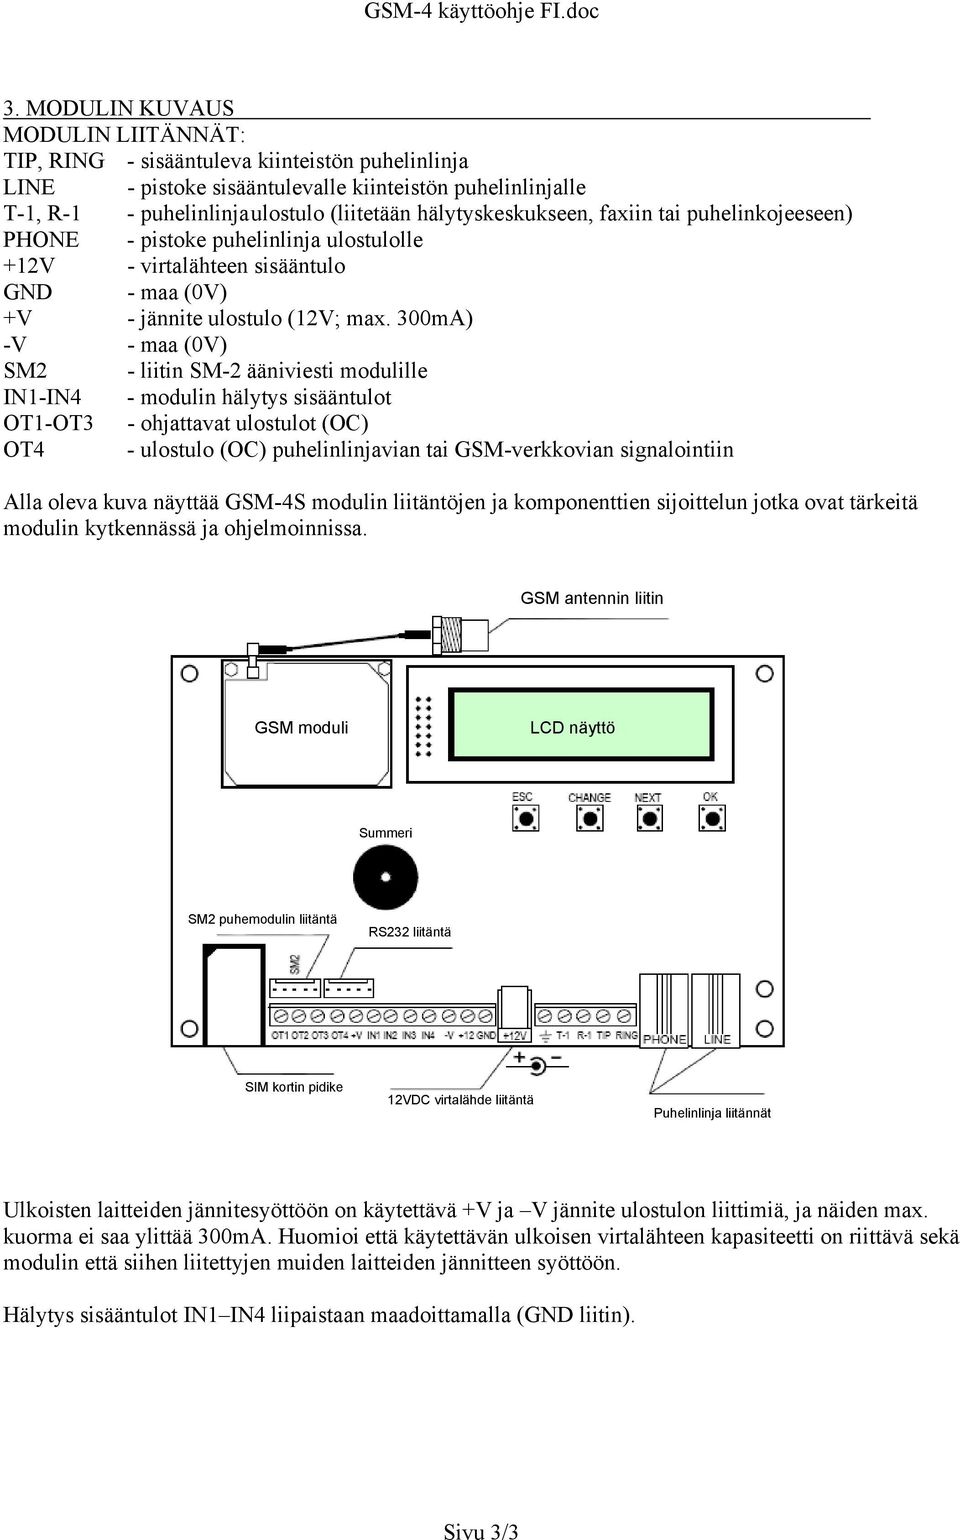 300mA) -V - maa (0V) SM2 - liitin SM-2 ääniviesti modulille IN1-IN4 - modulin hälytys sisääntulot OT1-OT3 - ohjattavat ulostulot (OC) OT4 - ulostulo (OC) puhelinlinjavian tai GSM-verkkovian